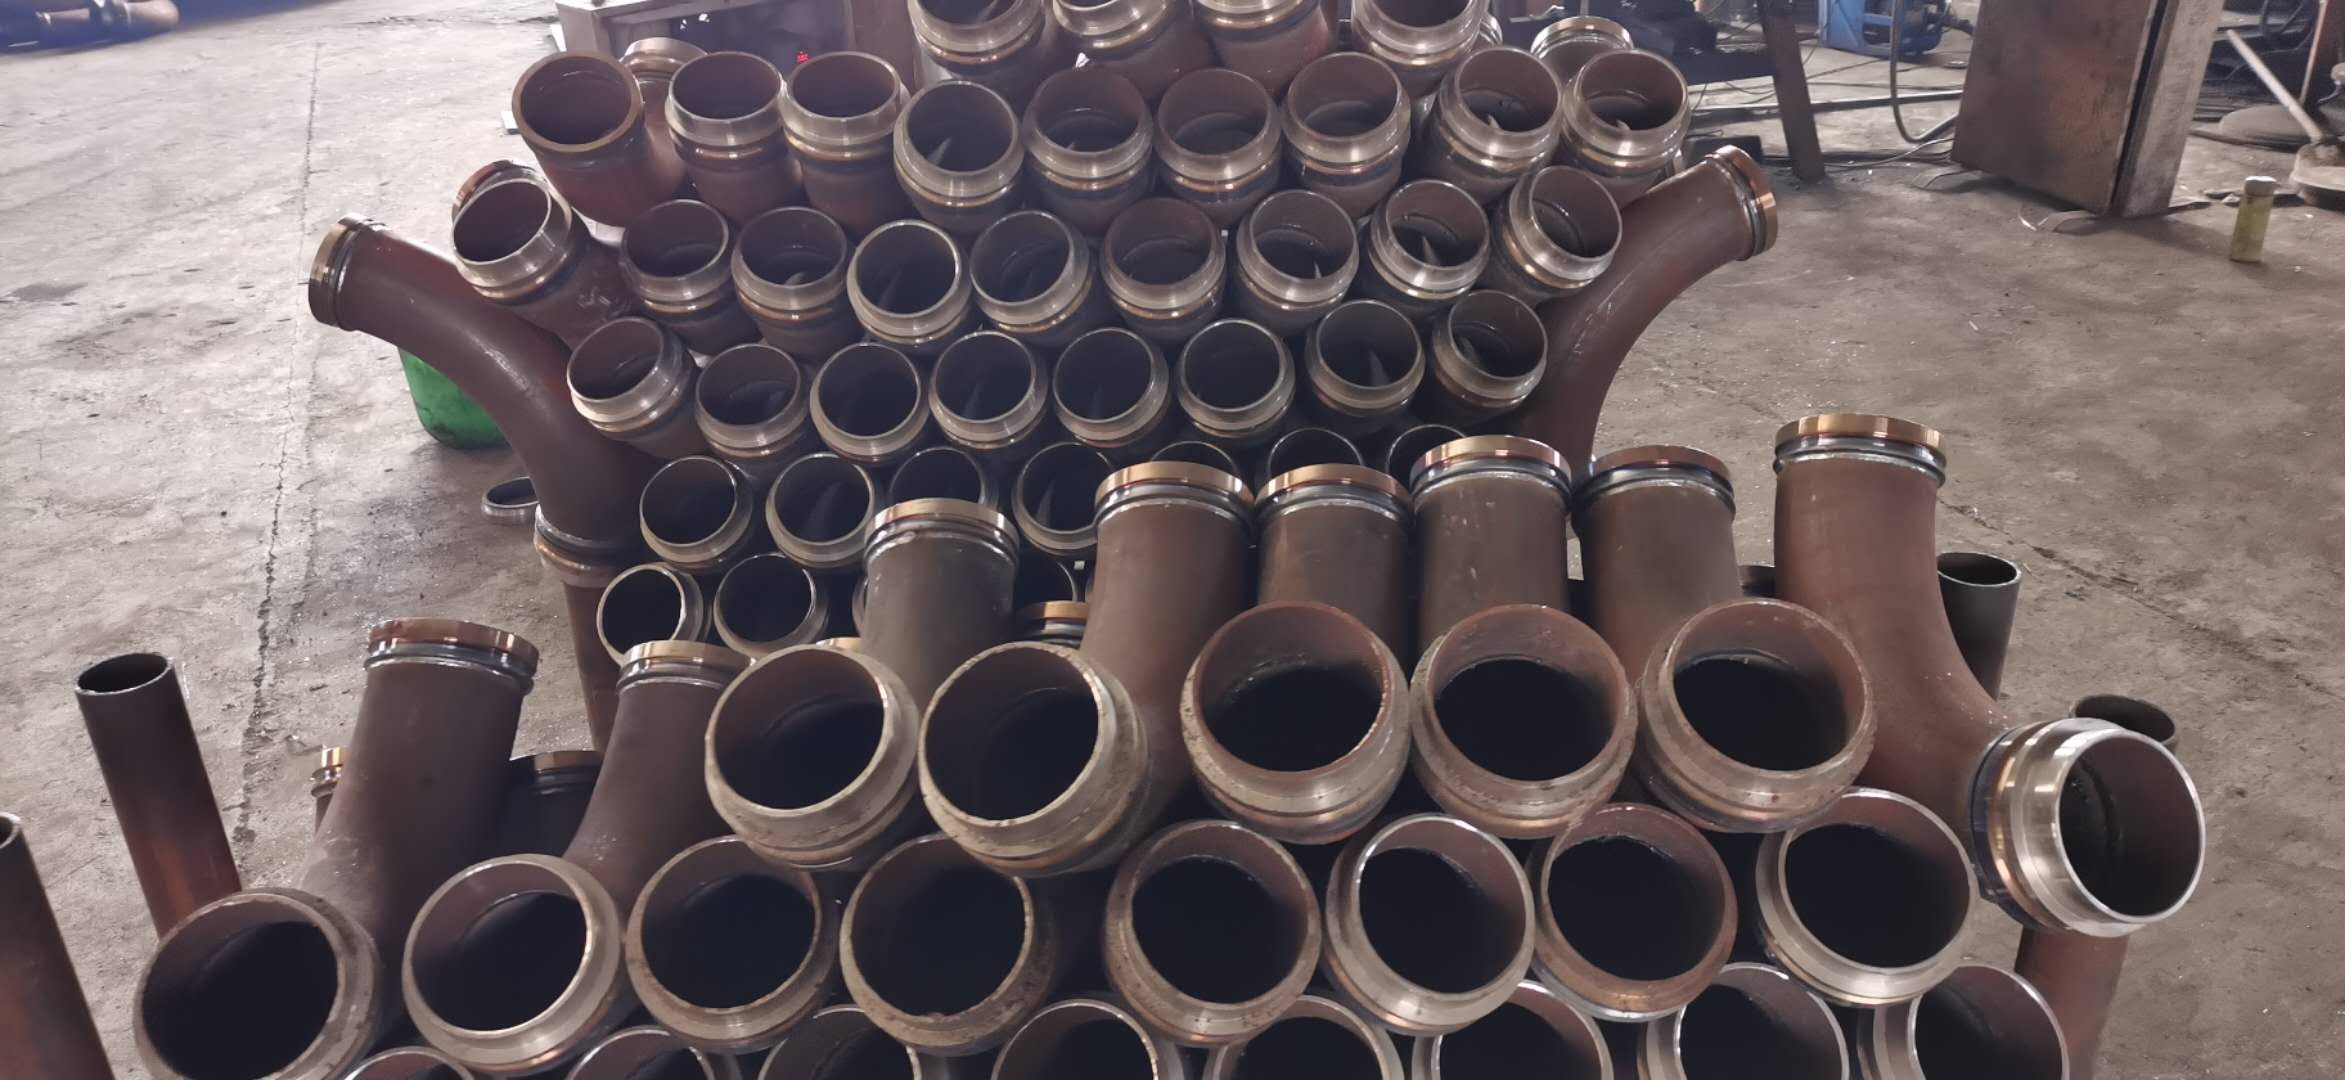 无缝泵管 厂家生产 泵管及各种配件 布料机专用泵管